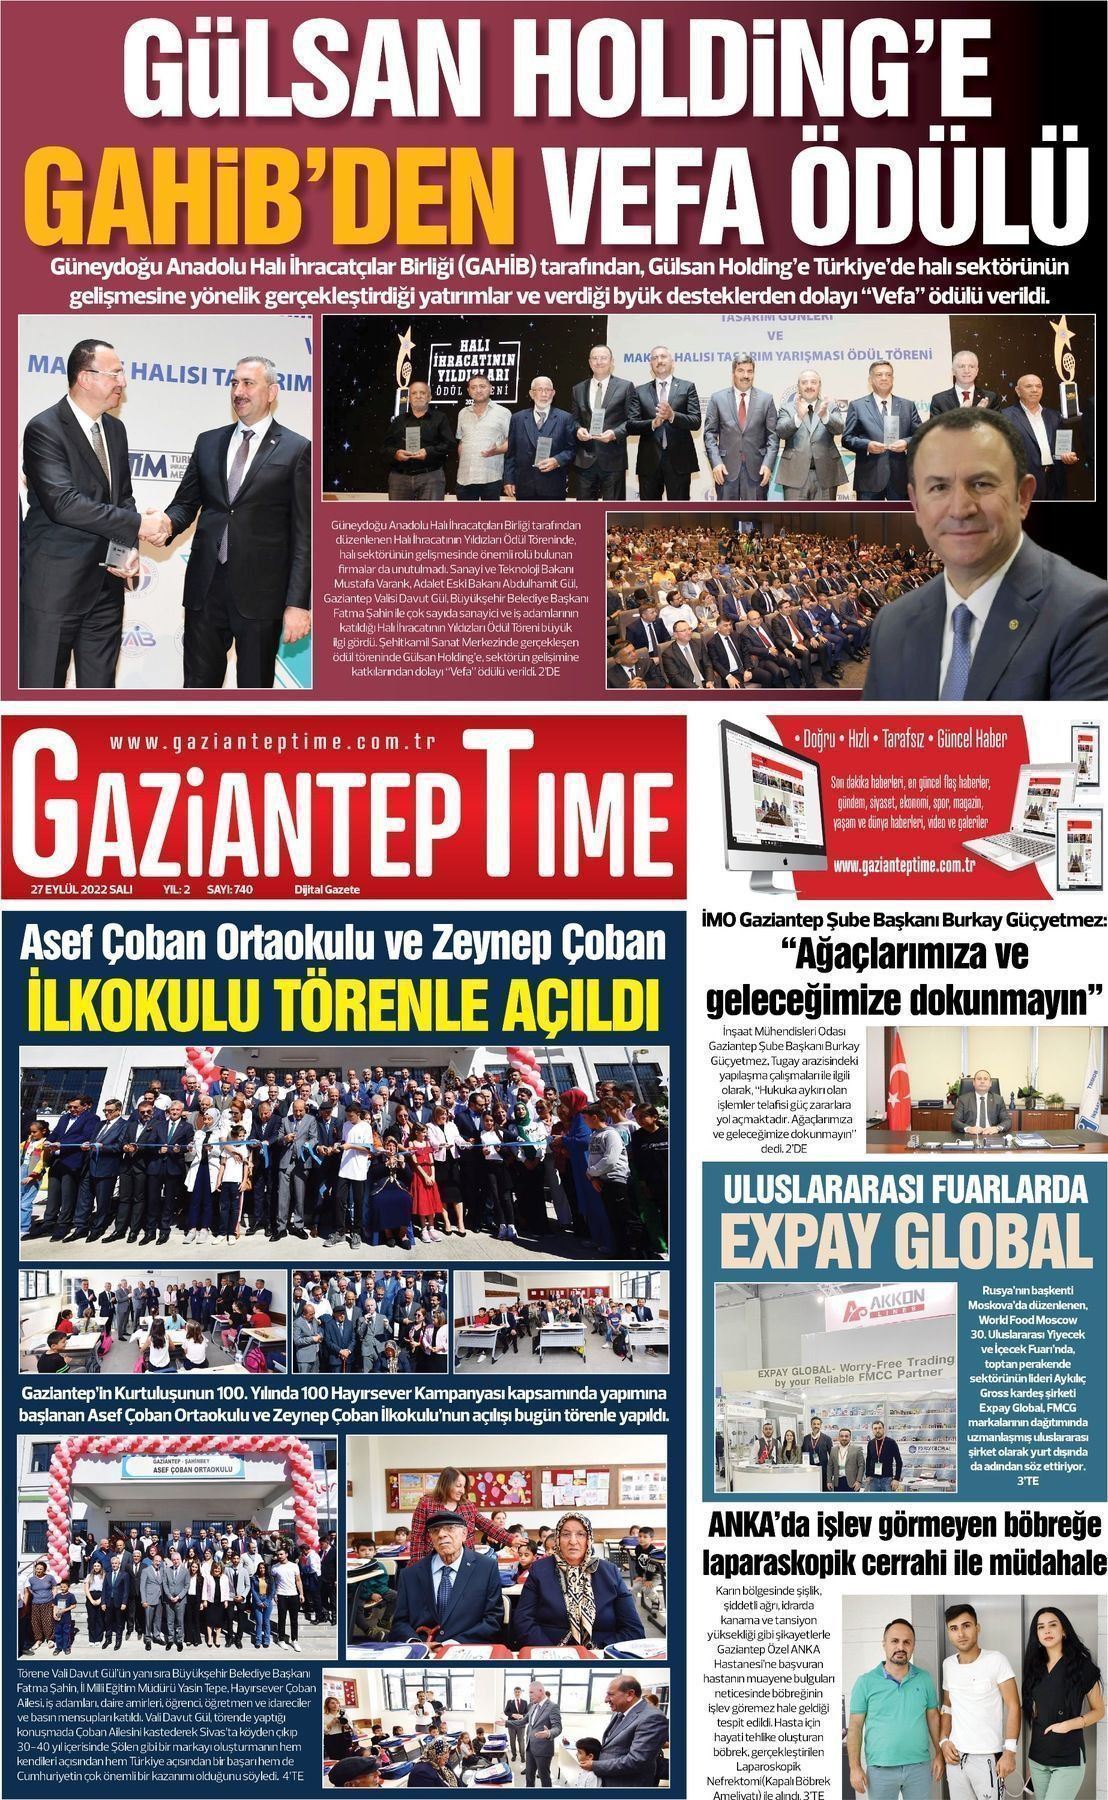 27 Eylül 2022 Gaziantep Time Gazete Manşeti